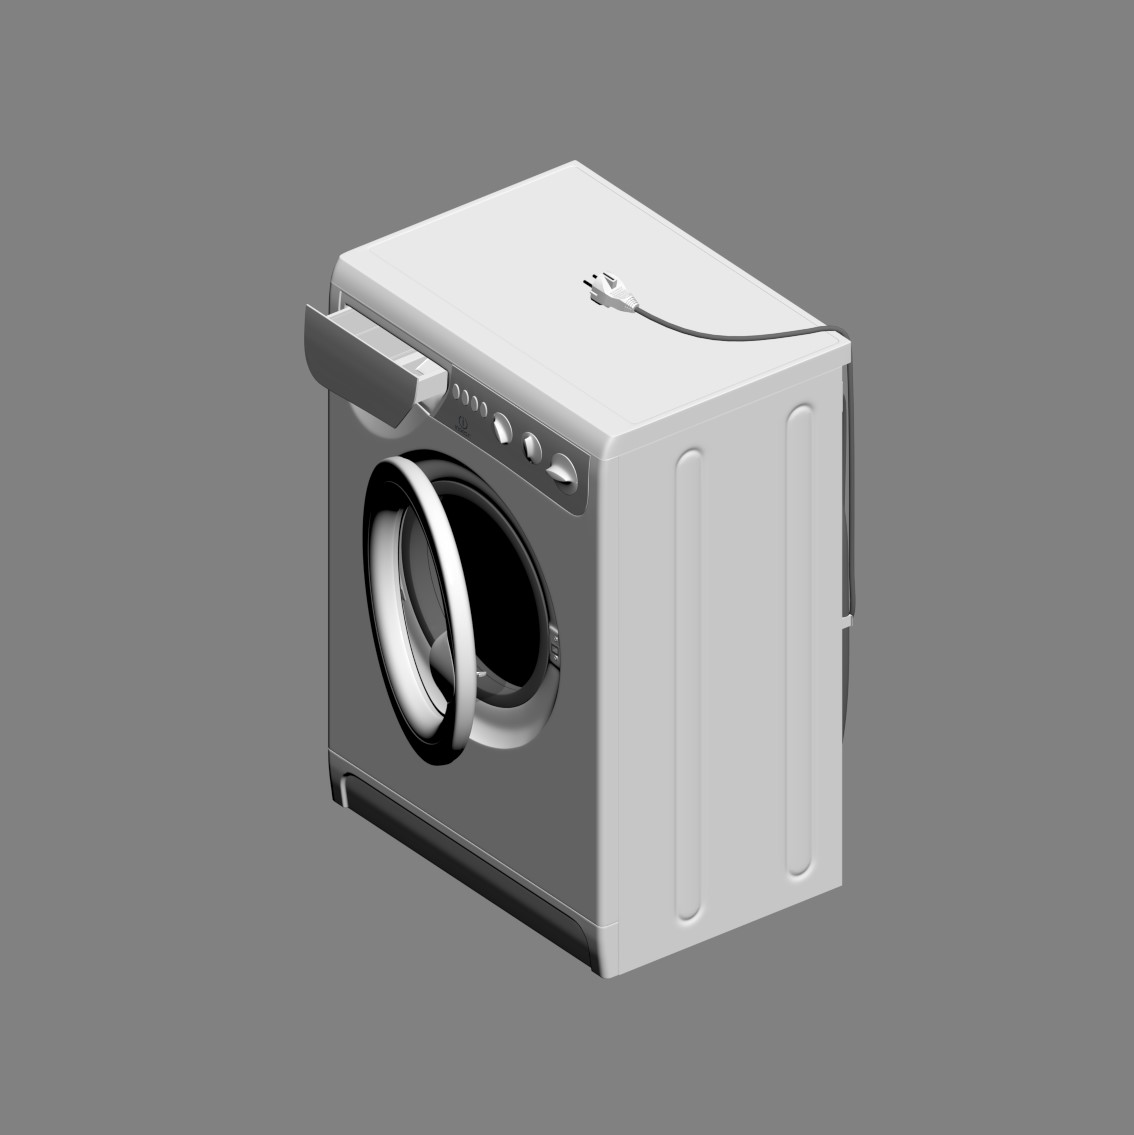 10426. Download Free Washing Machine Model By Vu Long